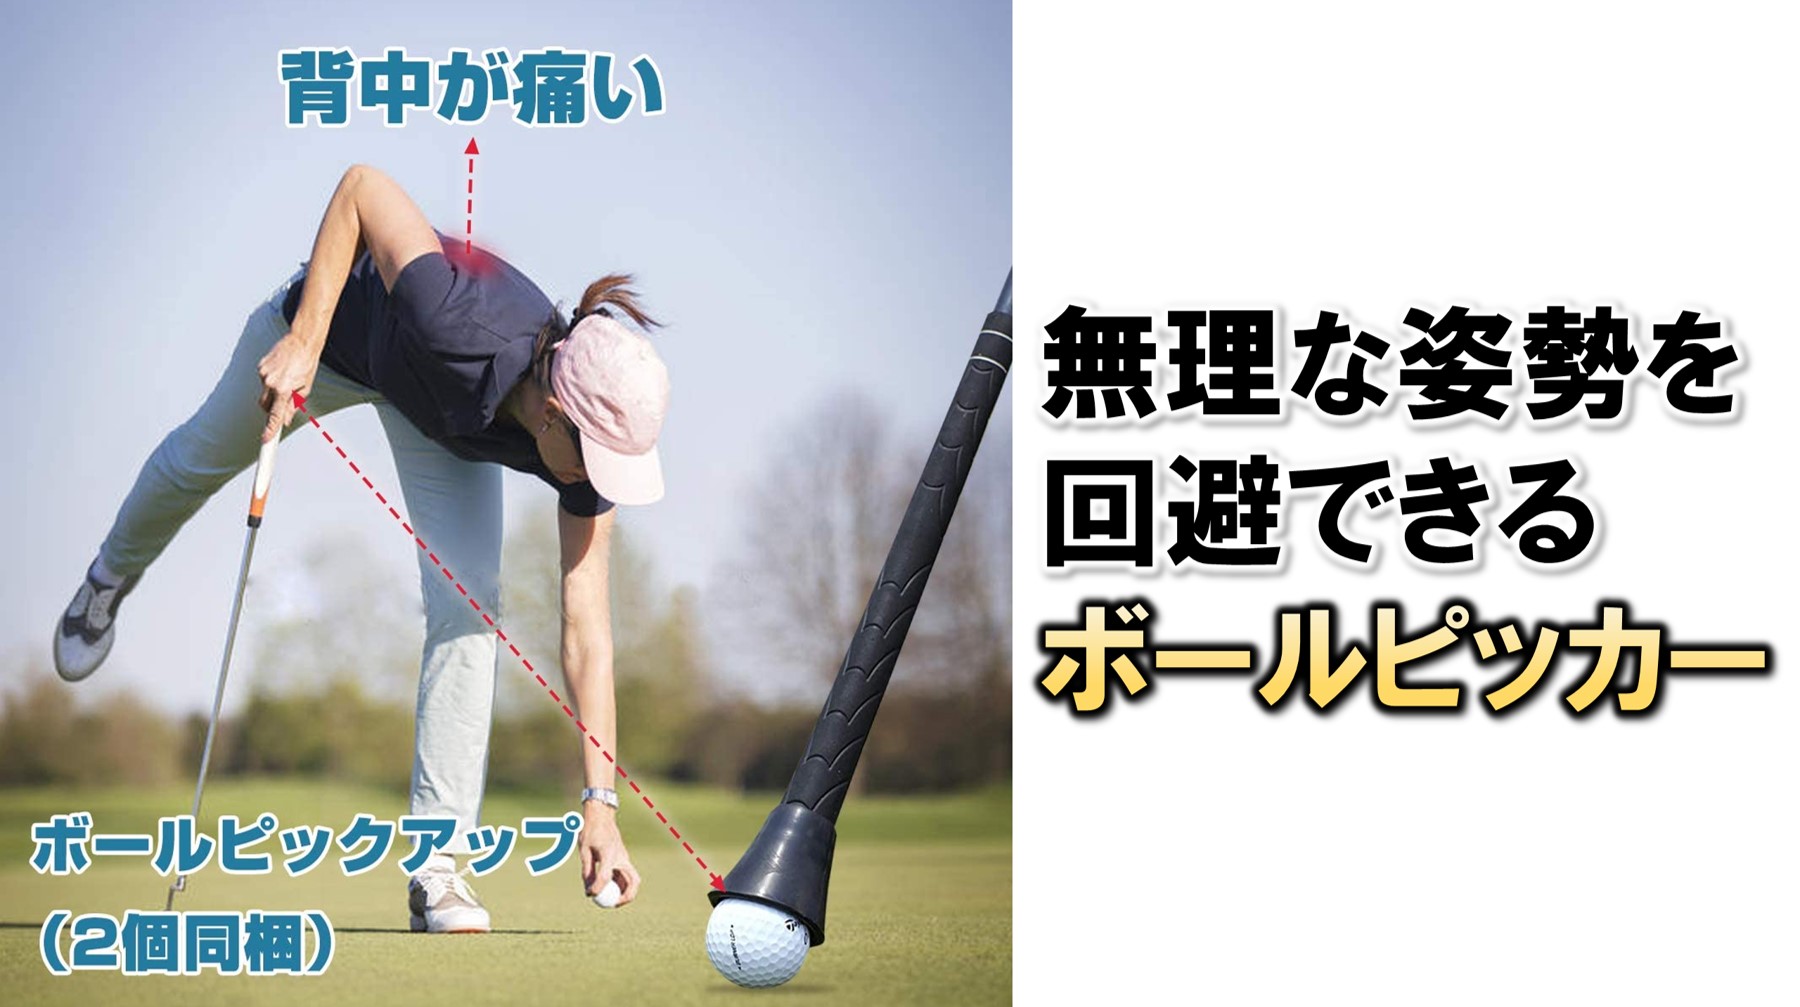 ゴルフボールが拾いやすい【ボールピッカー】 | メディカル×ゴルフ